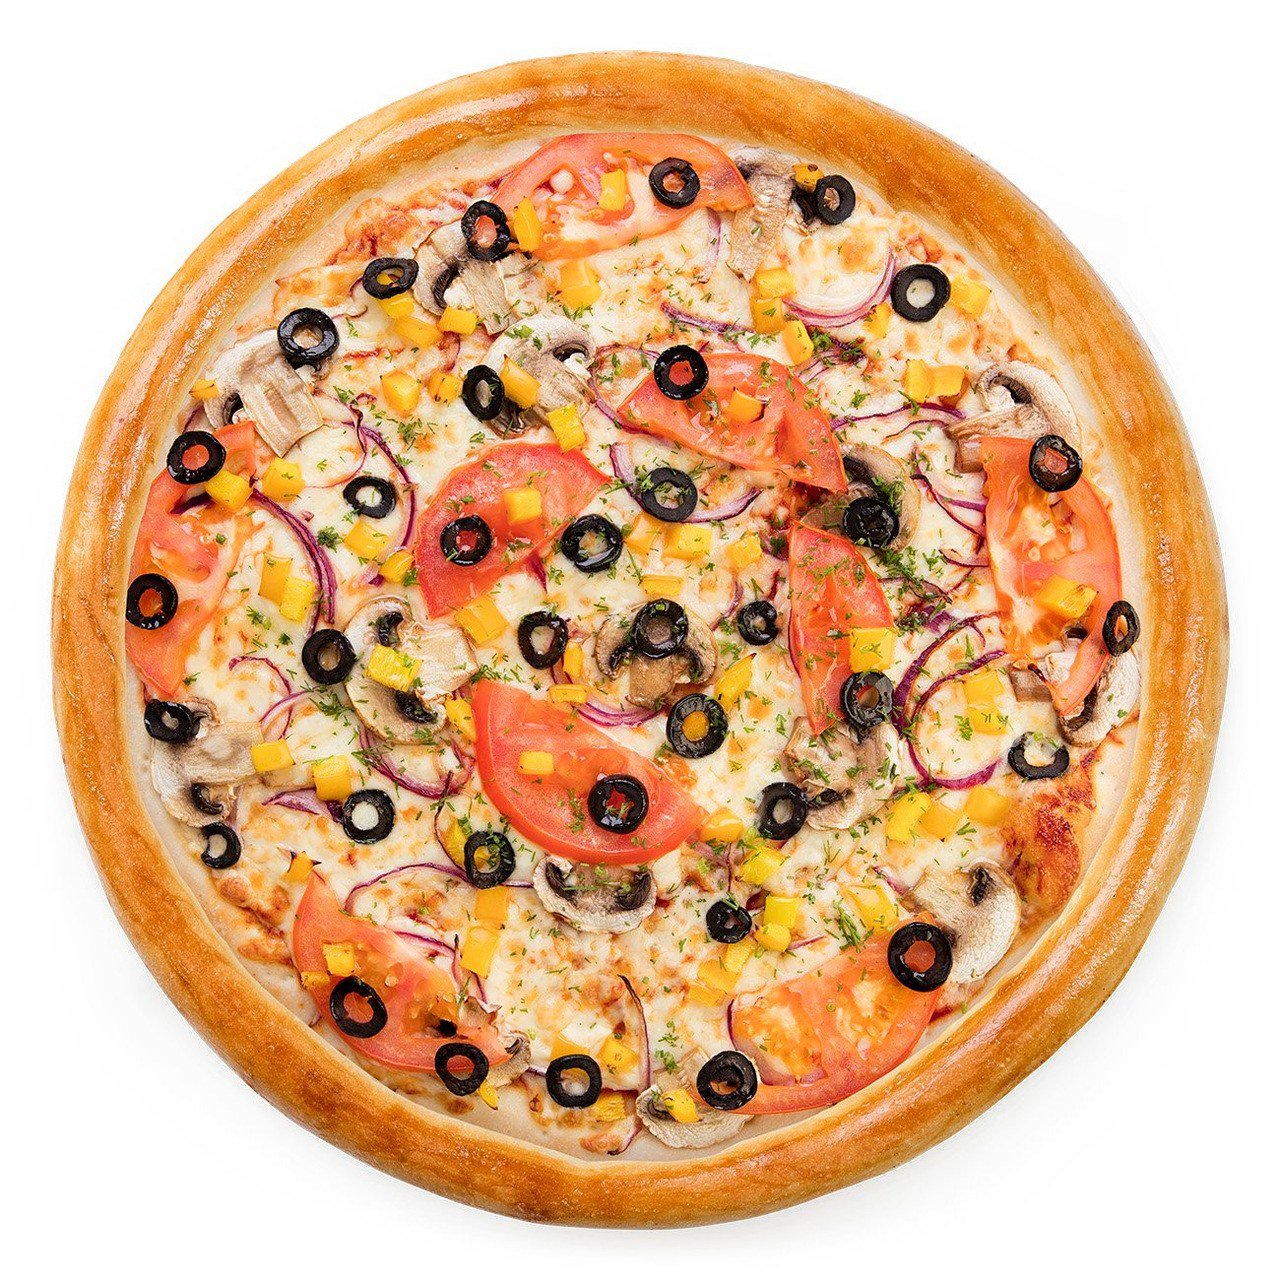 я хочу пиццу с перцем луком пепперони и оливками фото 30